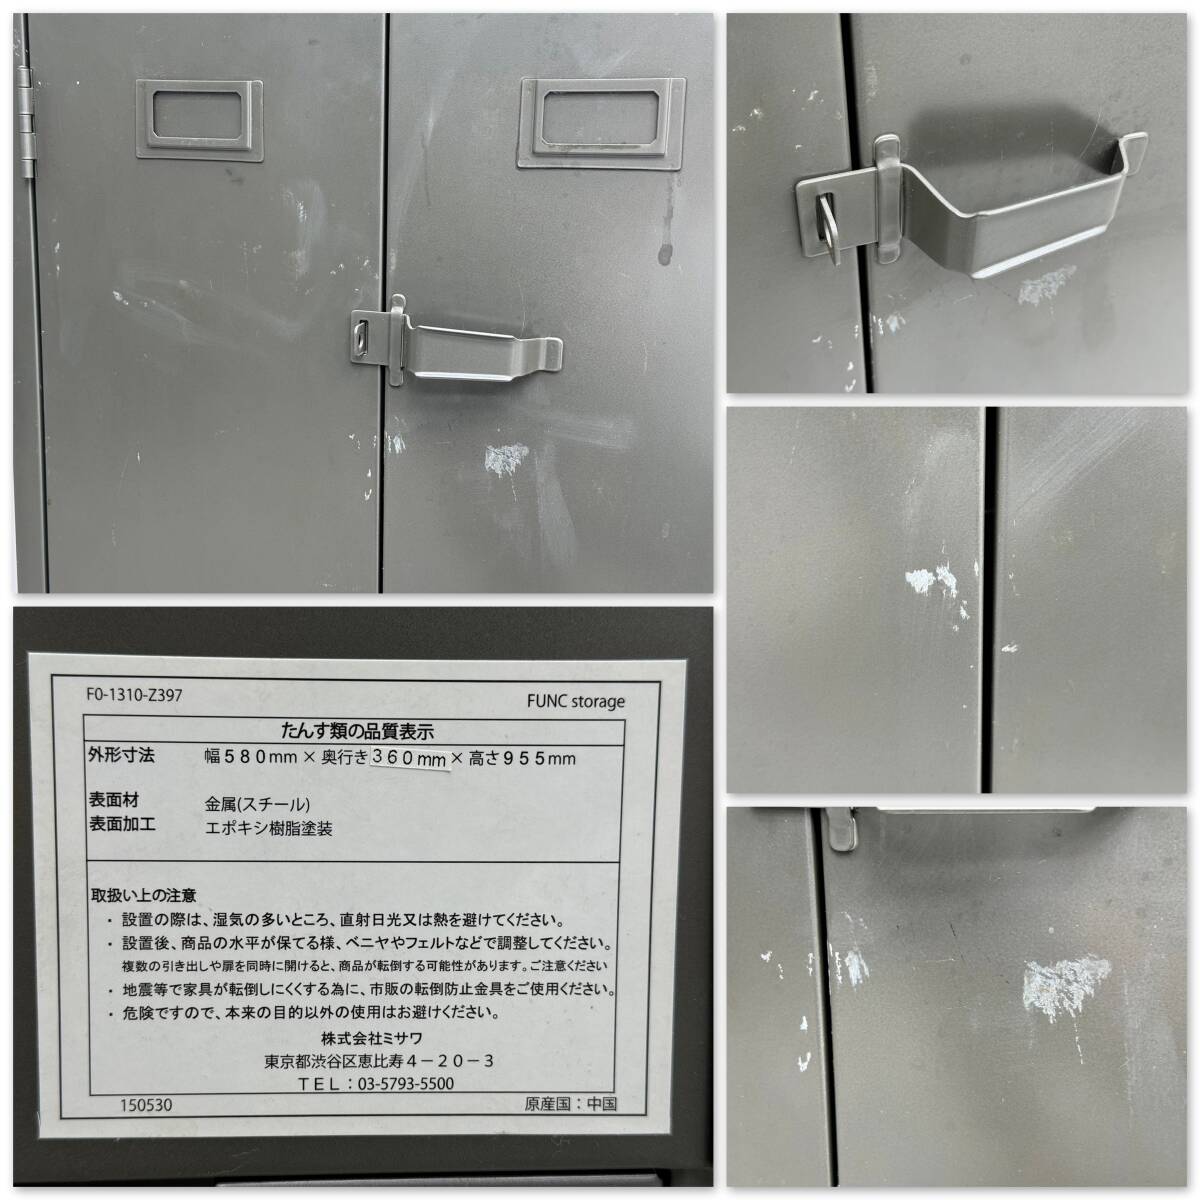 S743* beautiful goods *unico sea urchin koFUNC fan k shelves storage steel cabinet sideboard 